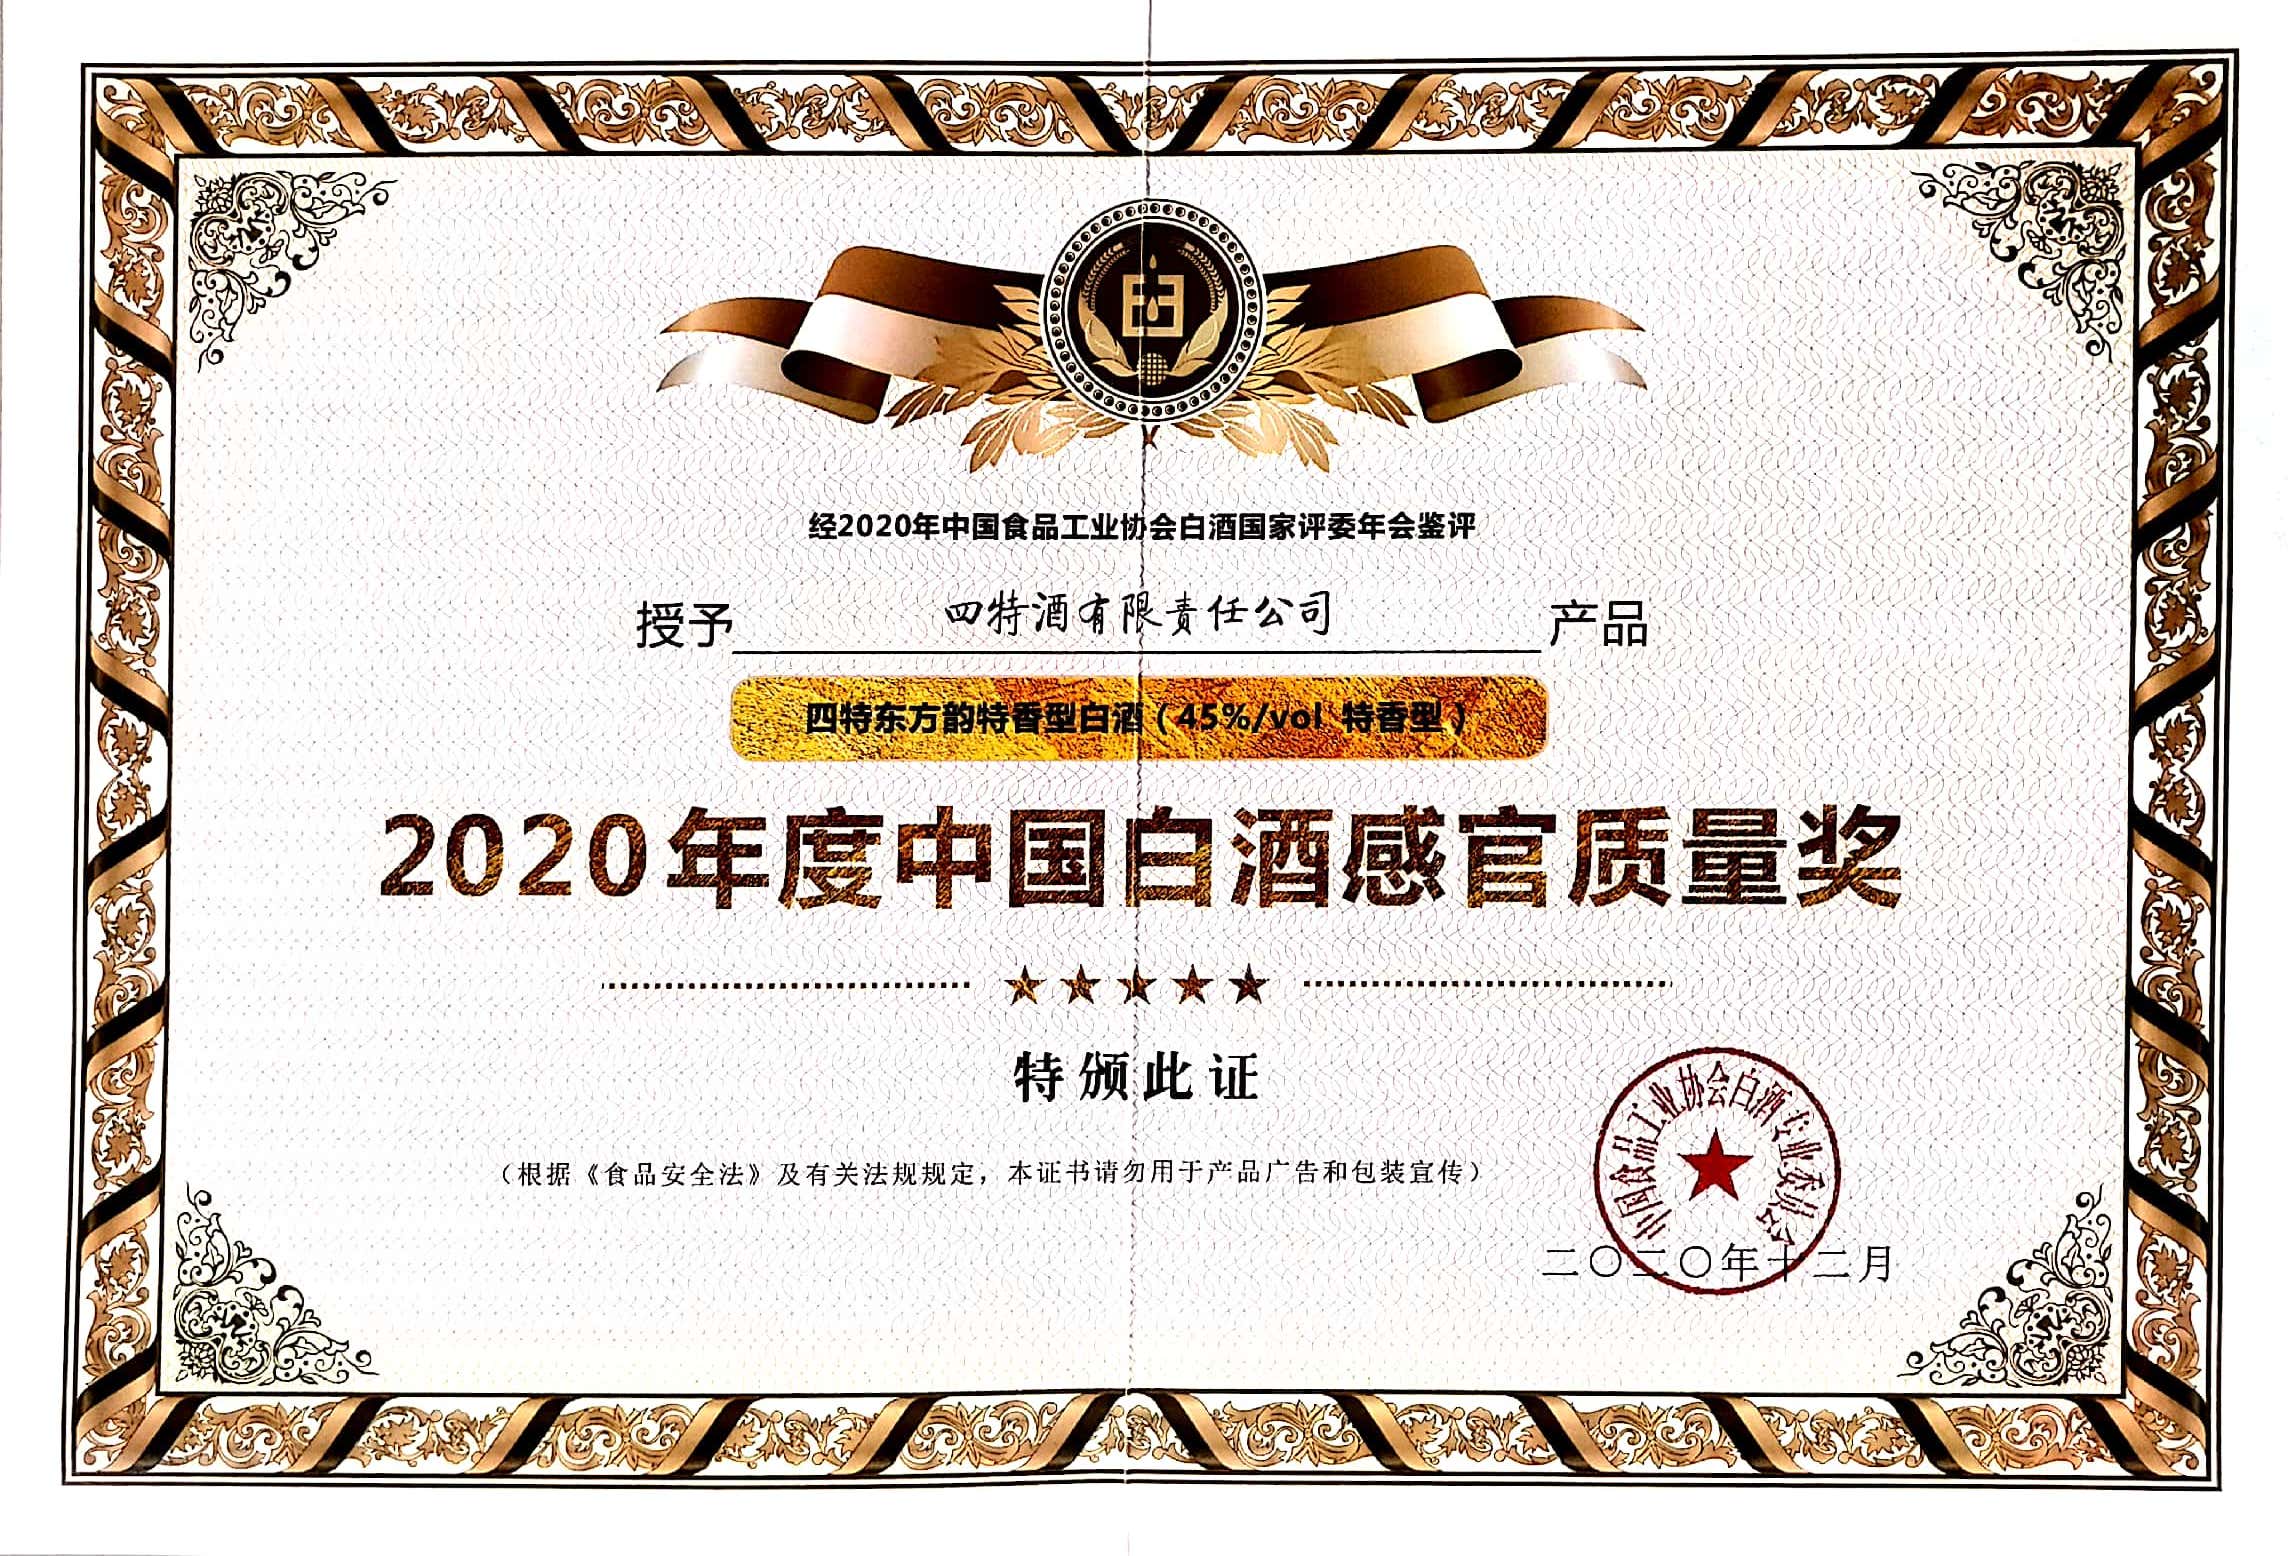 yobo体育
东方韵特香型白酒（45%vol特香型）获评“2020年度中国白酒感官质量奖”。